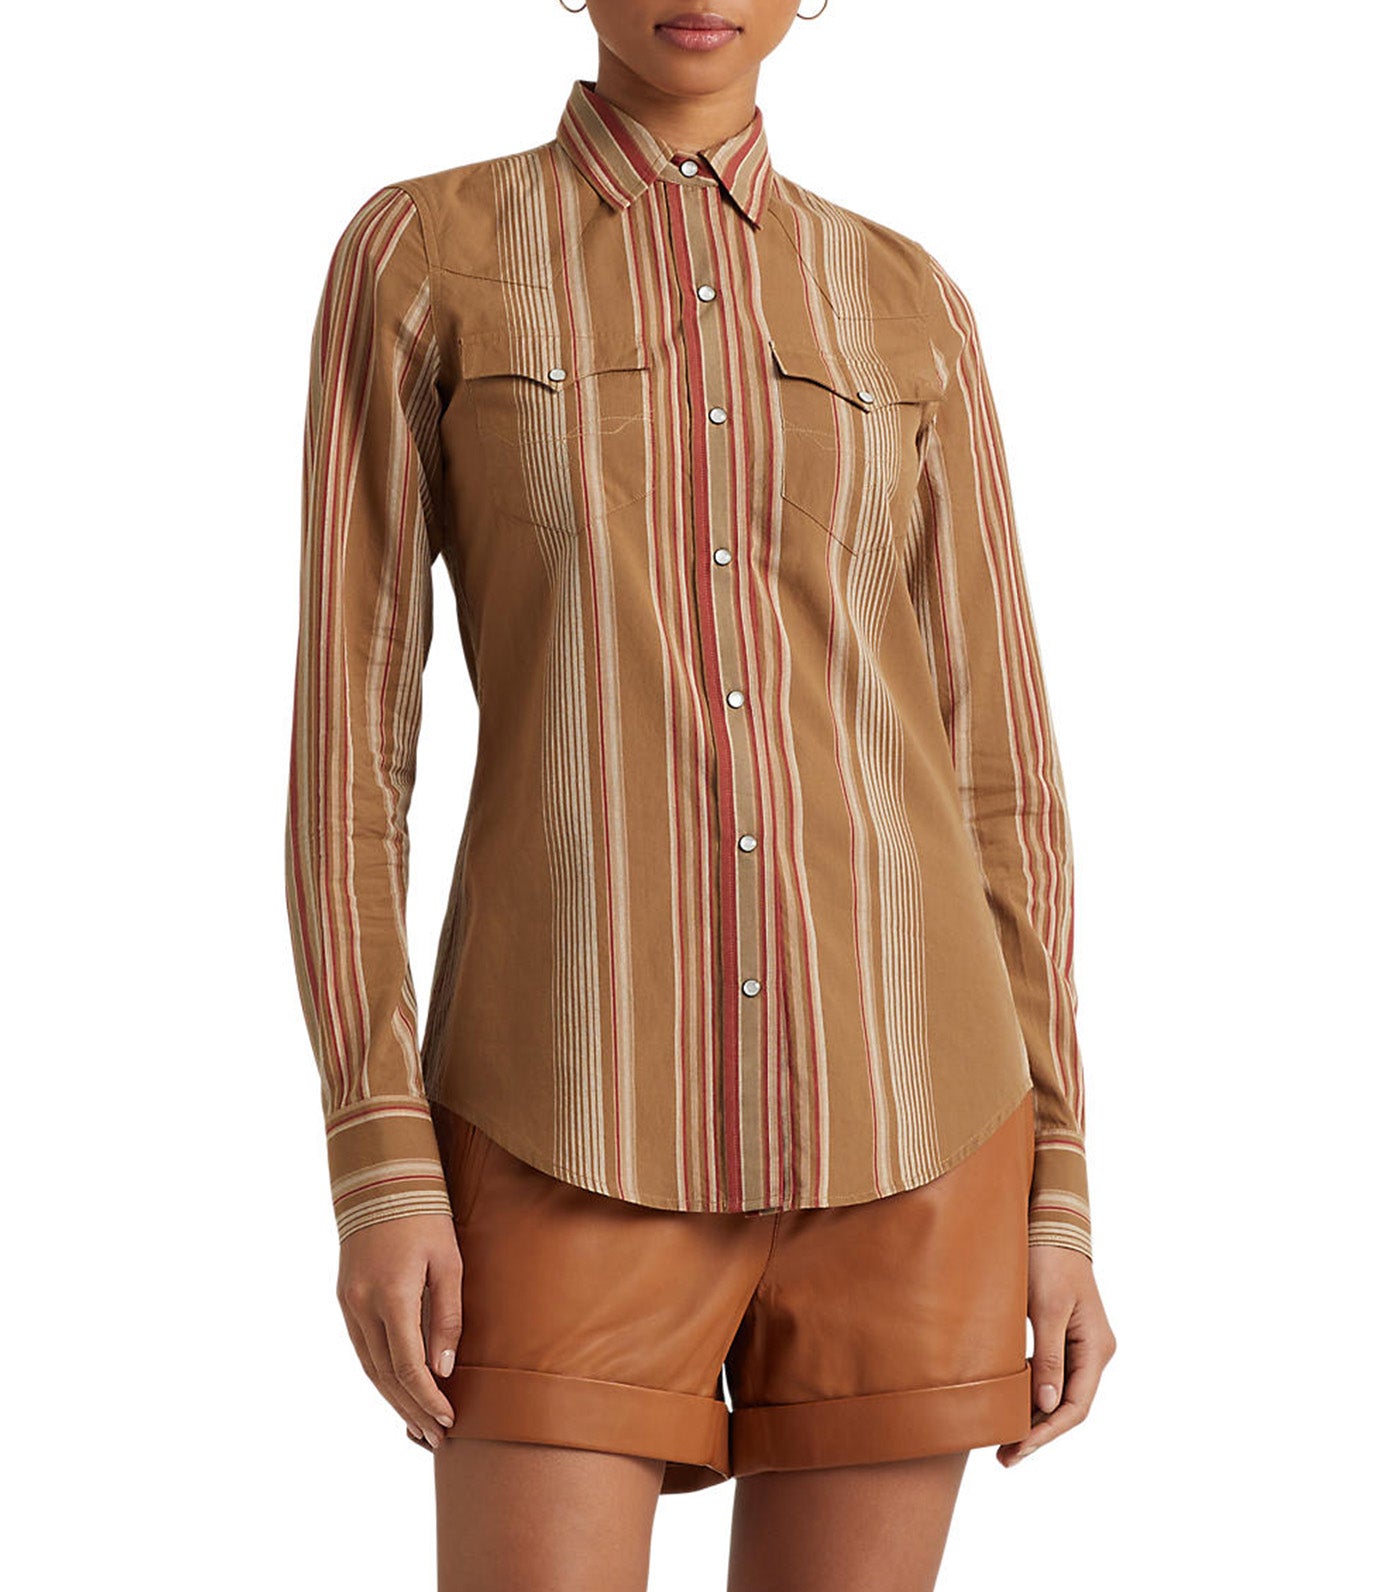 Women's Striped Cotton Shirt Tan Multi